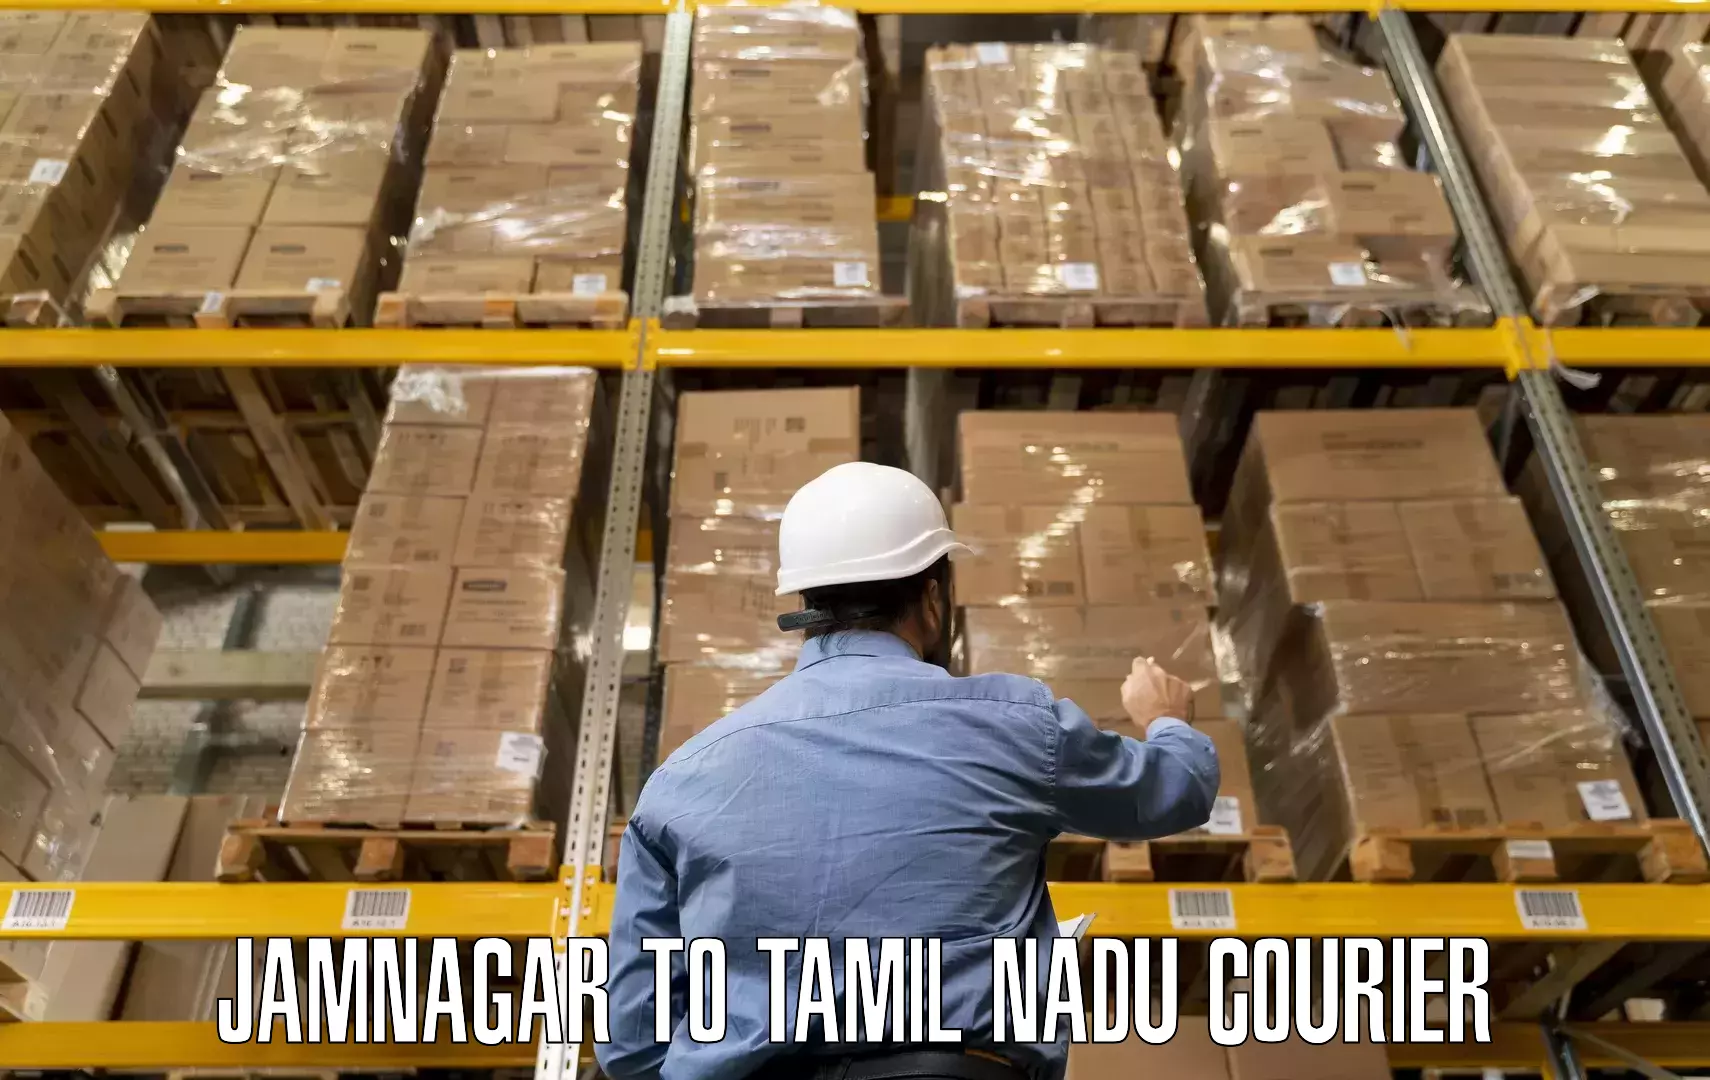 Professional moving company Jamnagar to Ramanathapuram